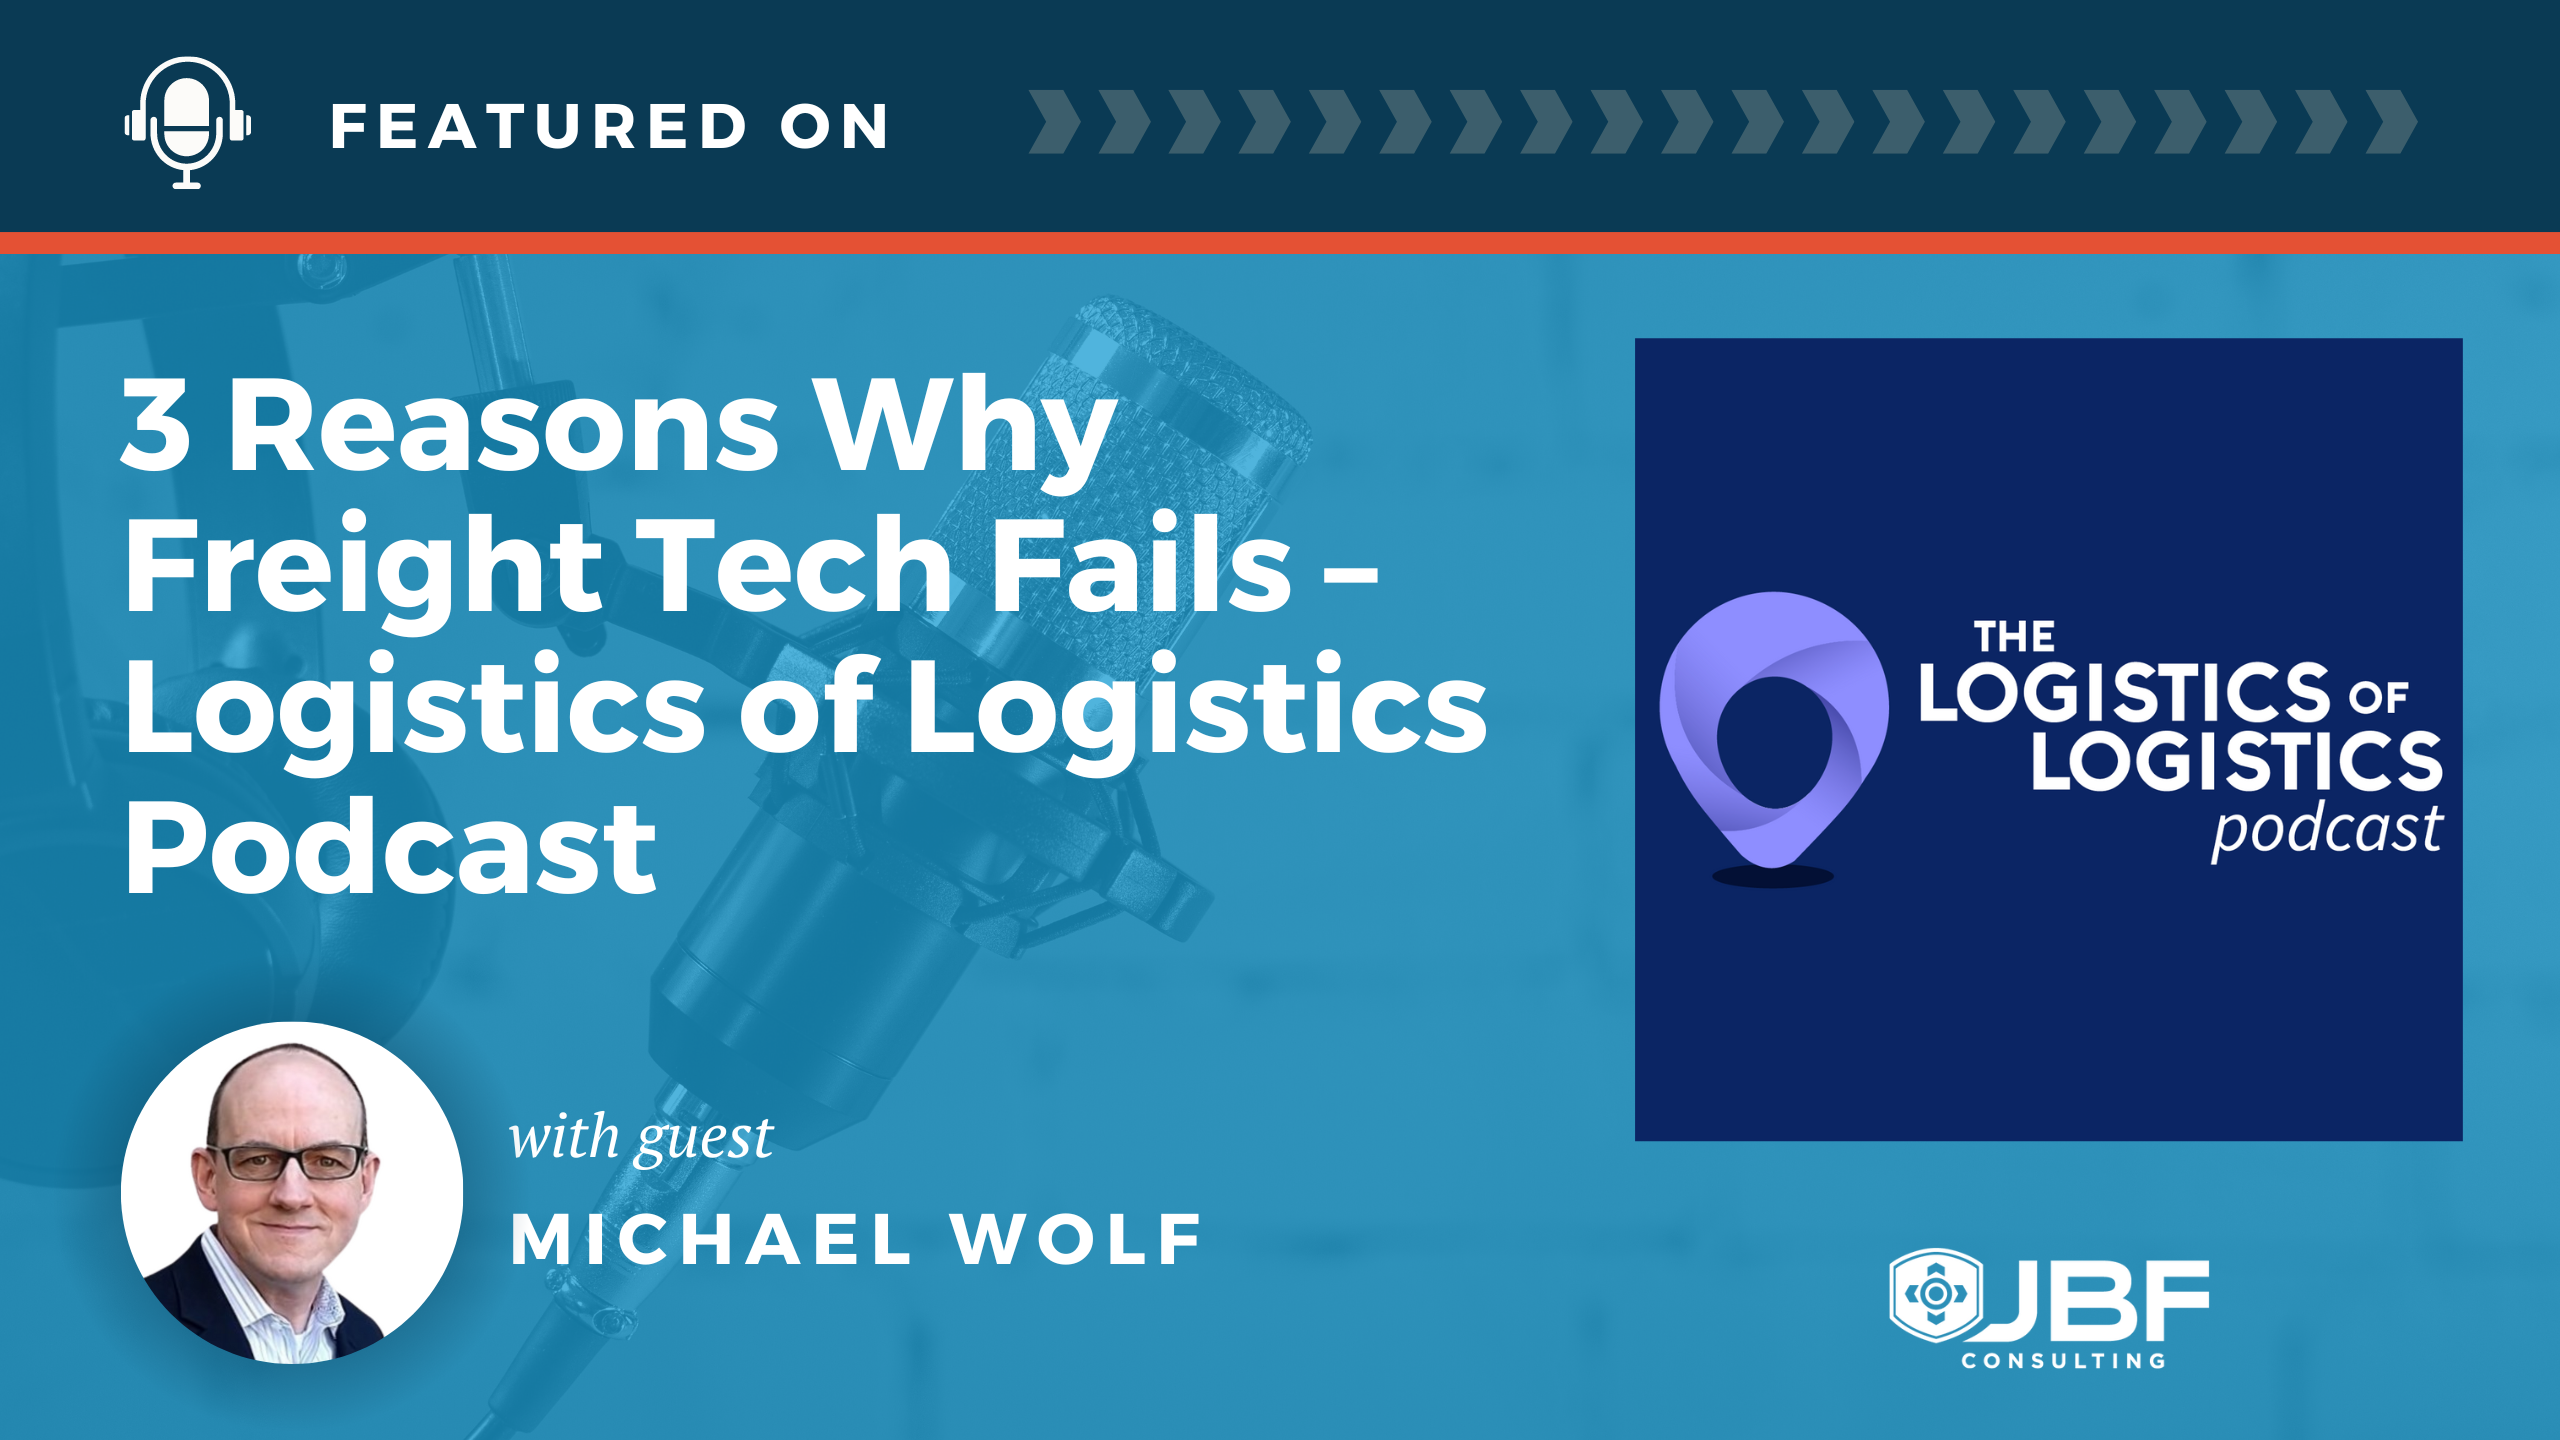 Logistics of Logistics - Mike Wolf - Freight Tech Fails